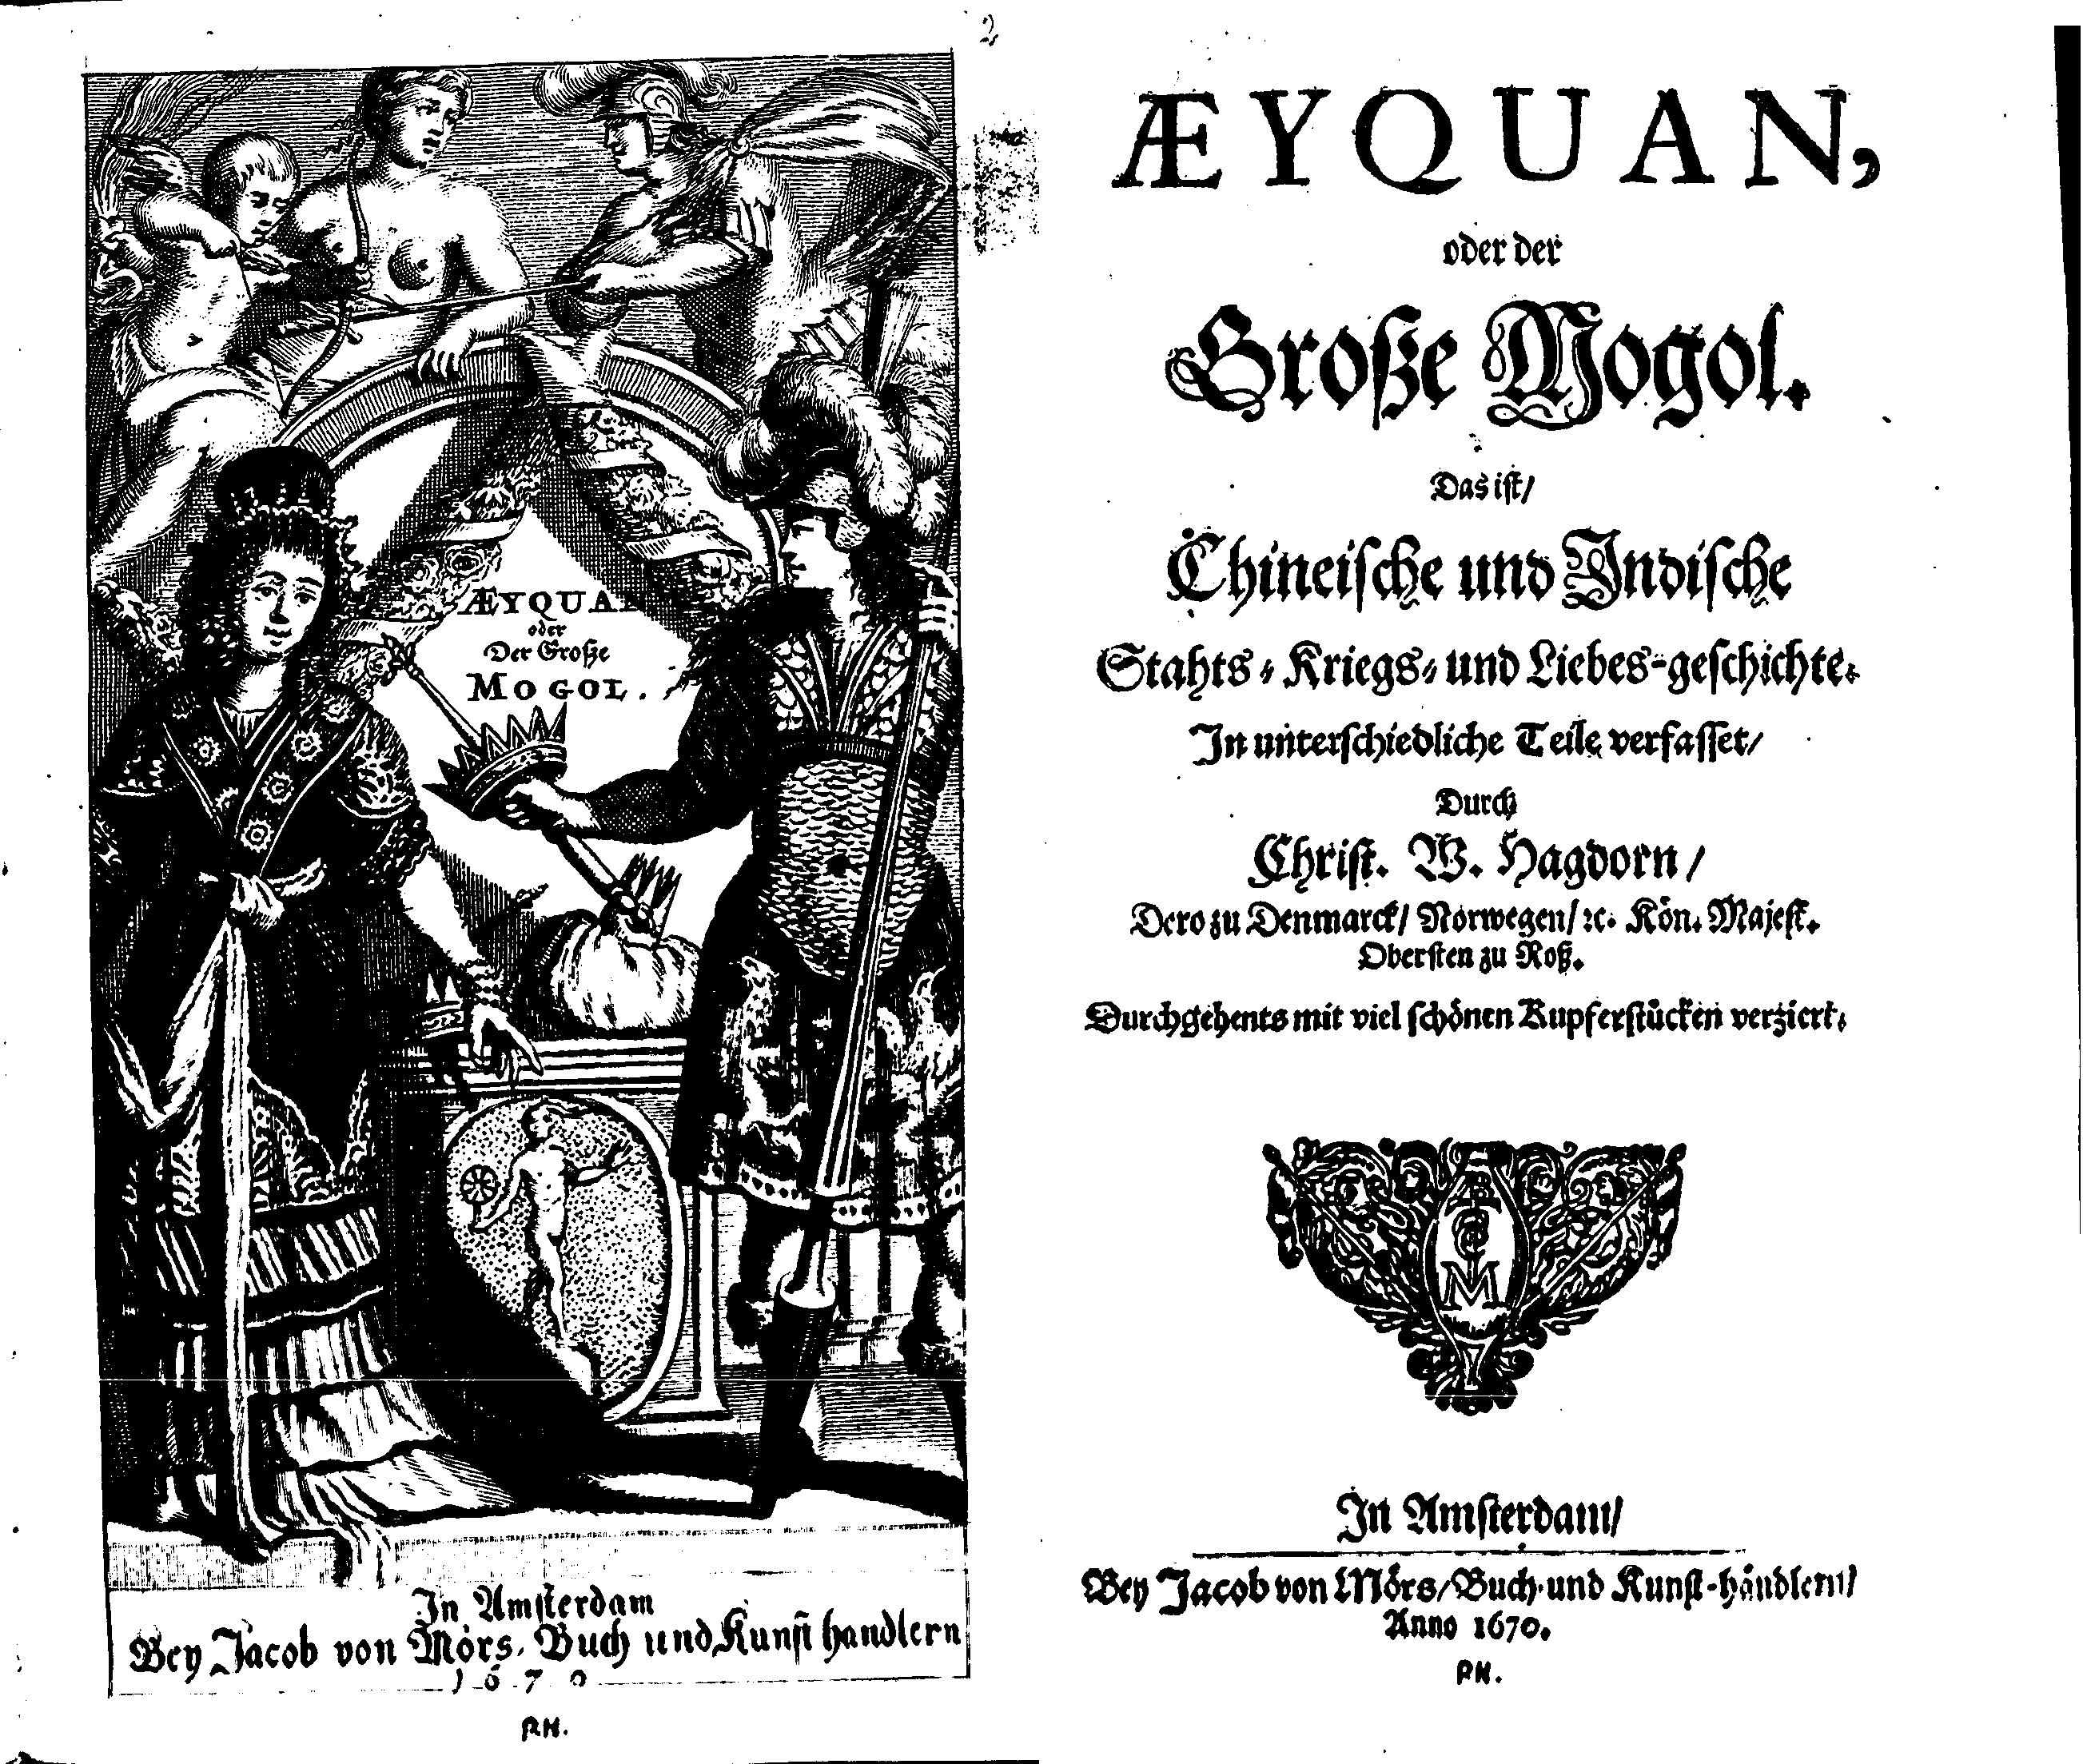 Aeyquan, oder der Große Mogol [...] verfasset durch Christ. W. Hagdorn (Amsterdam: J. von Mörs, 1670).